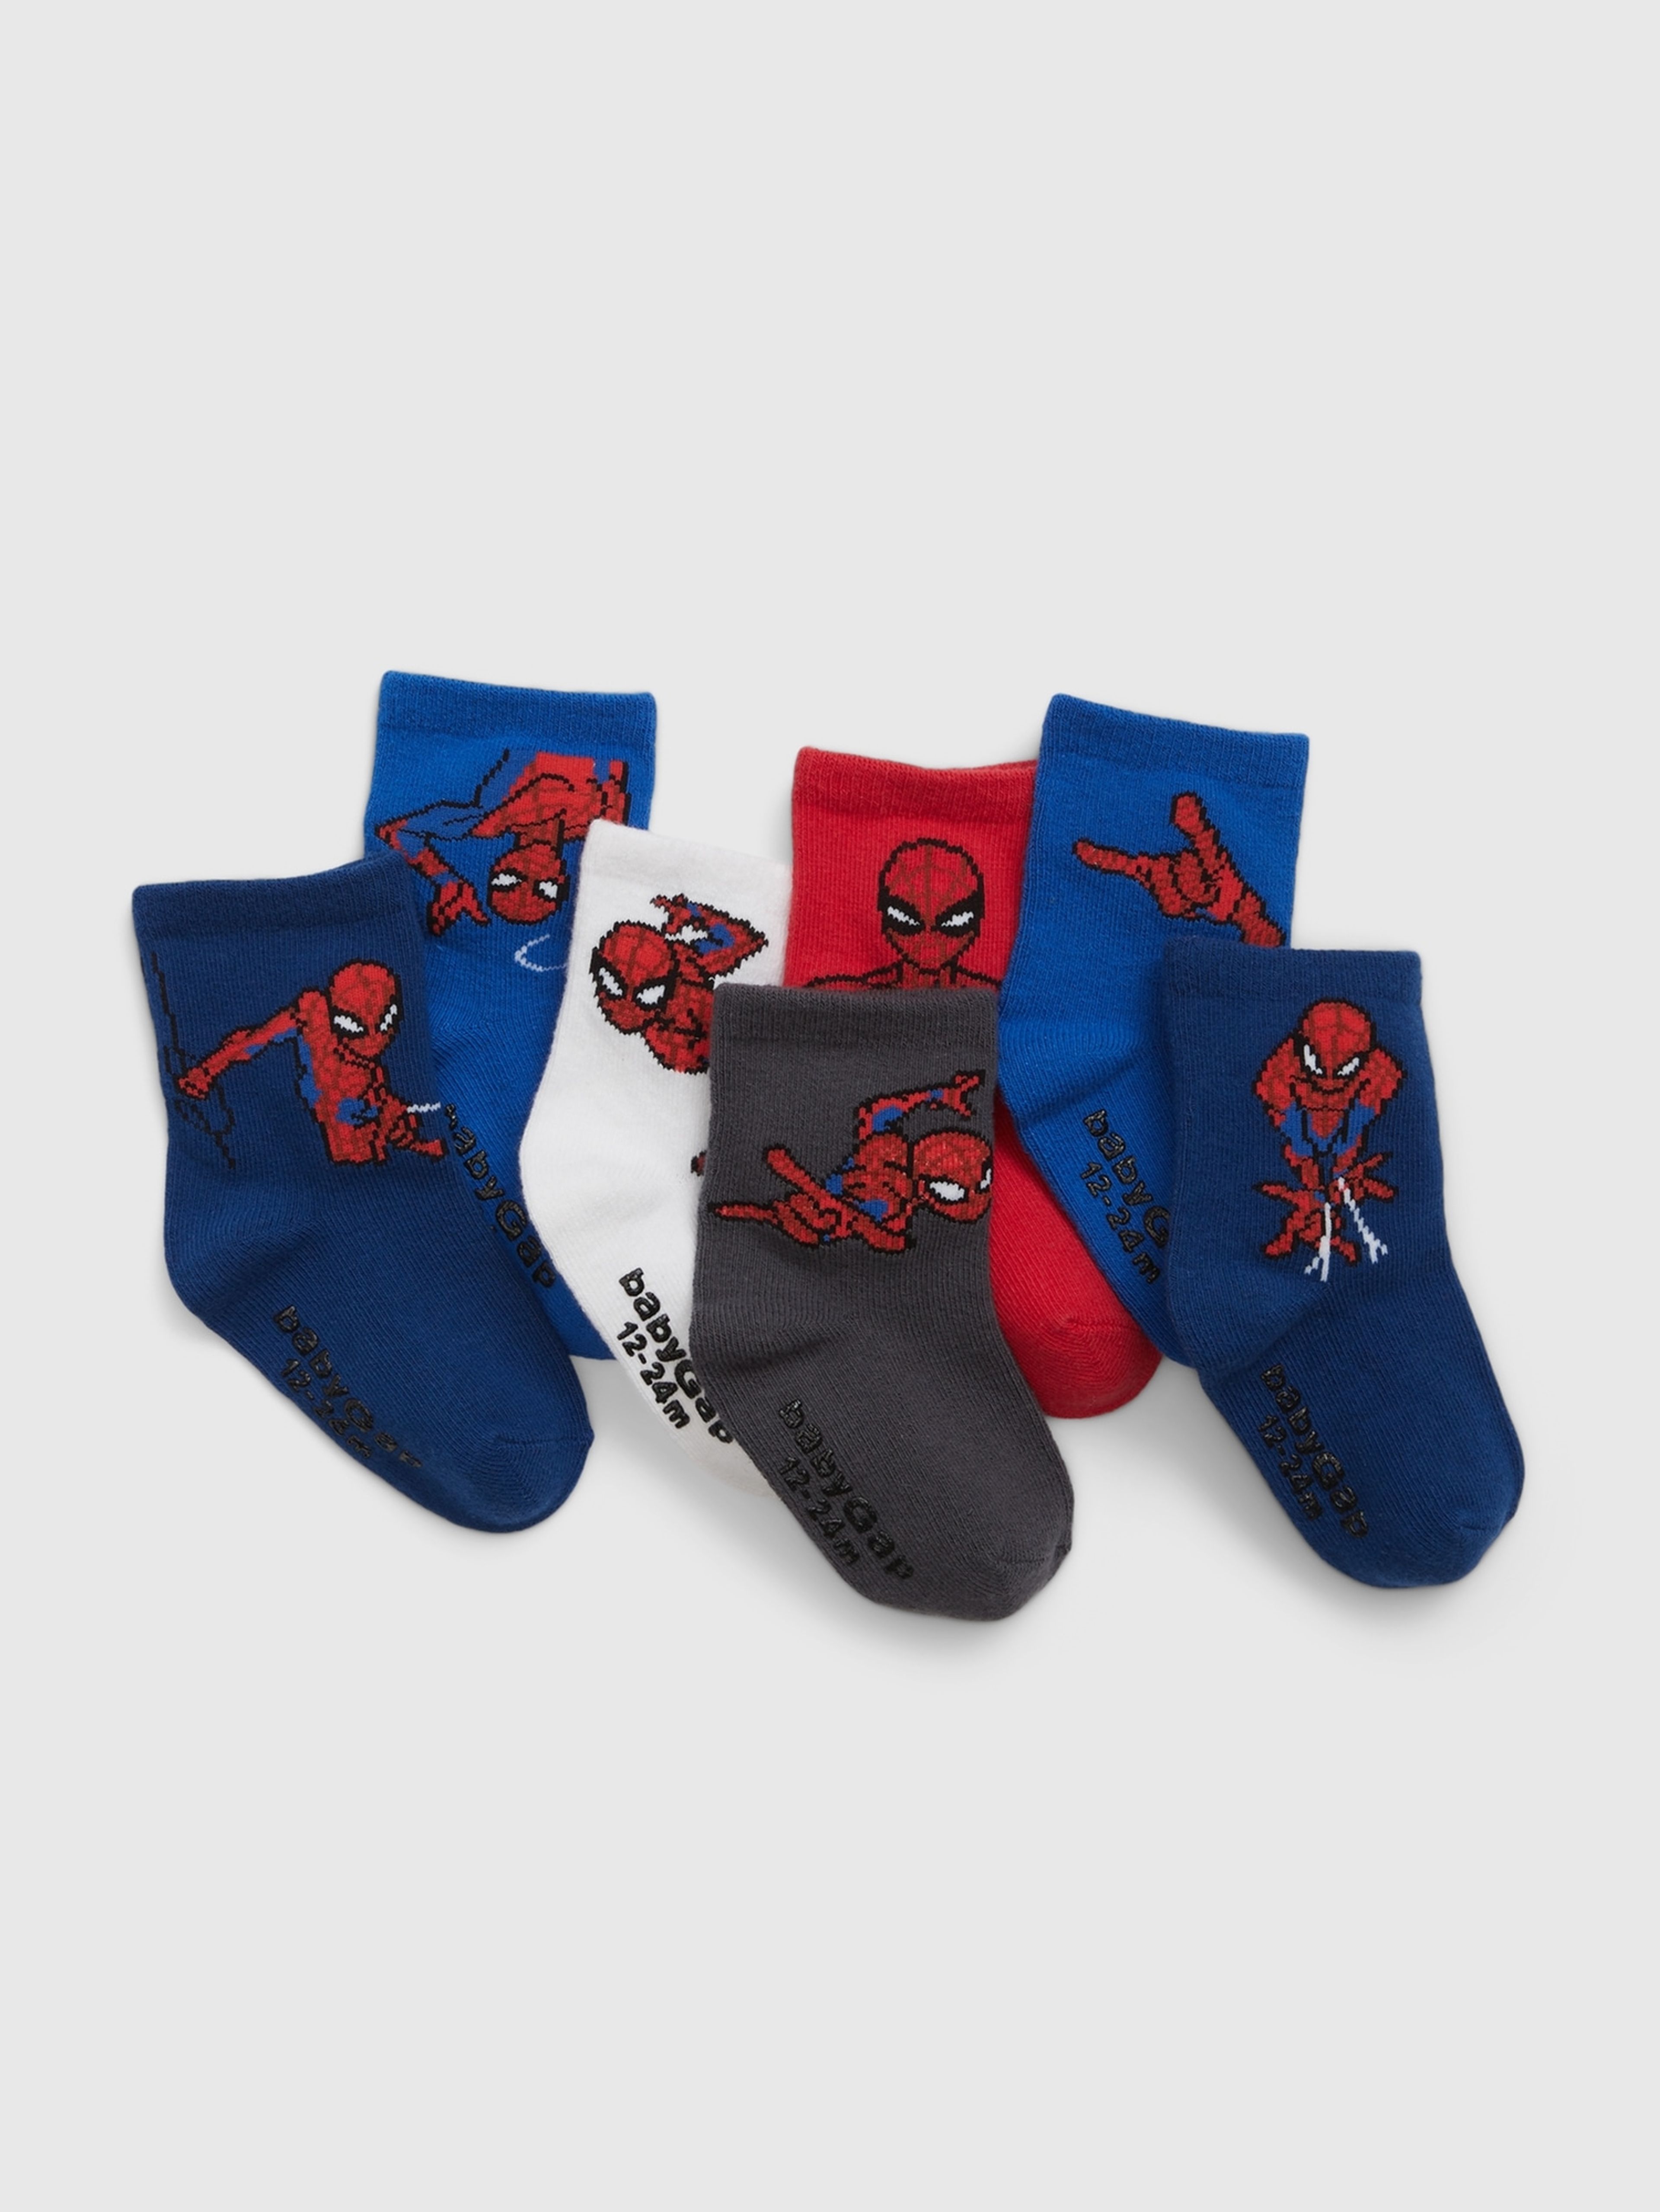 Ponožky GAP & Marvel, 7 párů